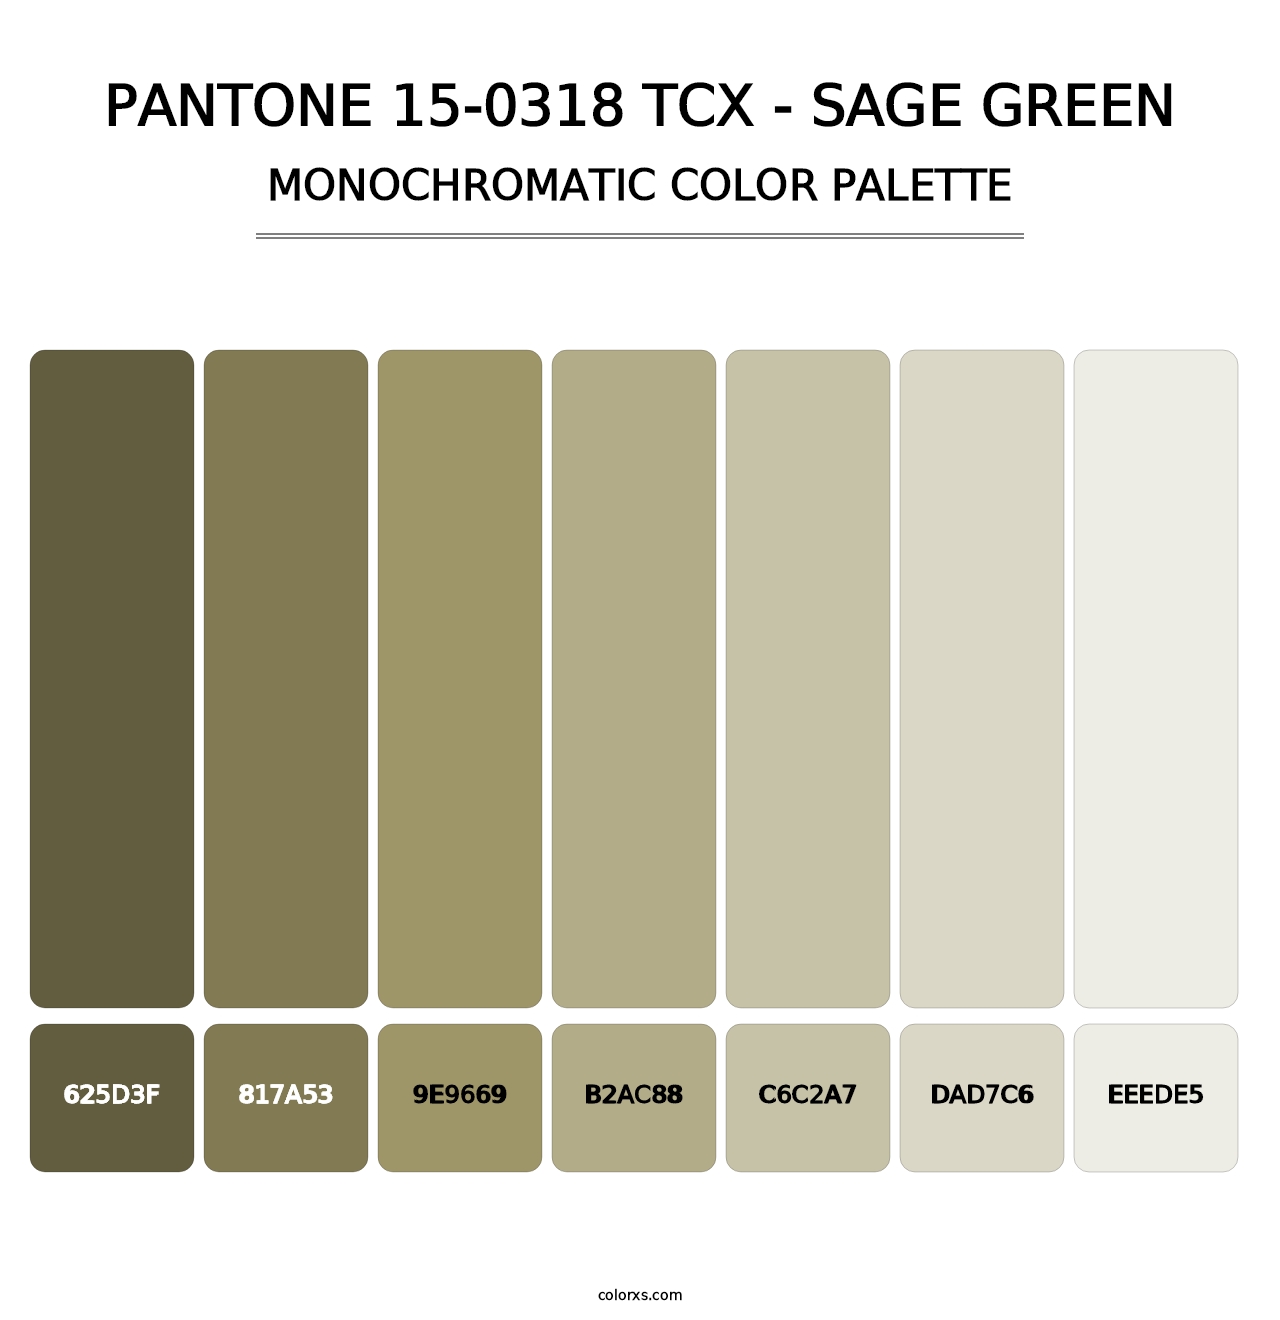 PANTONE 15-0318 TCX - Sage Green - Monochromatic Color Palette